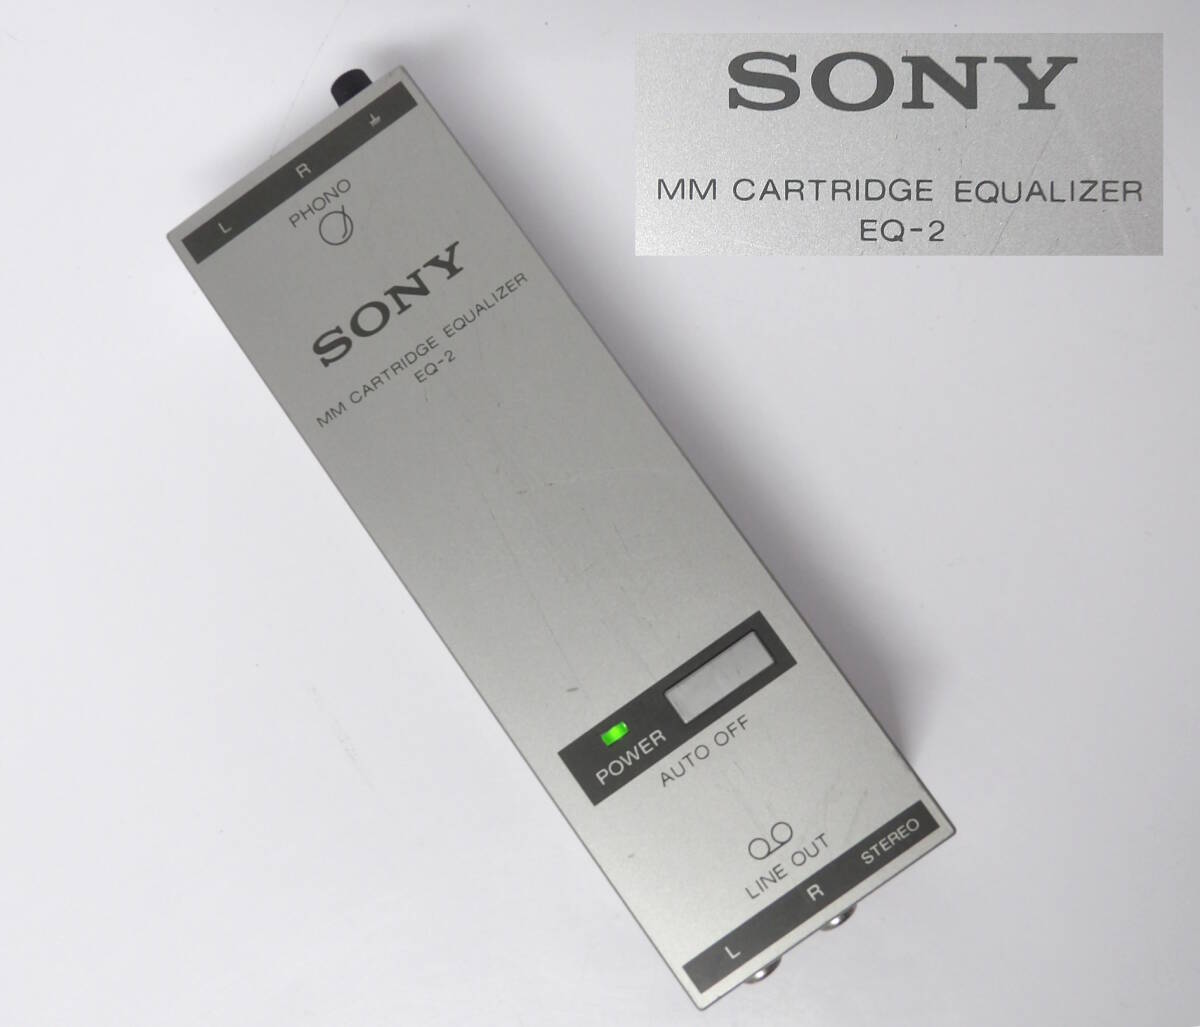 【よろづ屋】SONY MMカートリッジ イコライザー EQ-2 ソニー PHONO フォノイコライザー レコードプレーヤー用品(M0412)の画像1